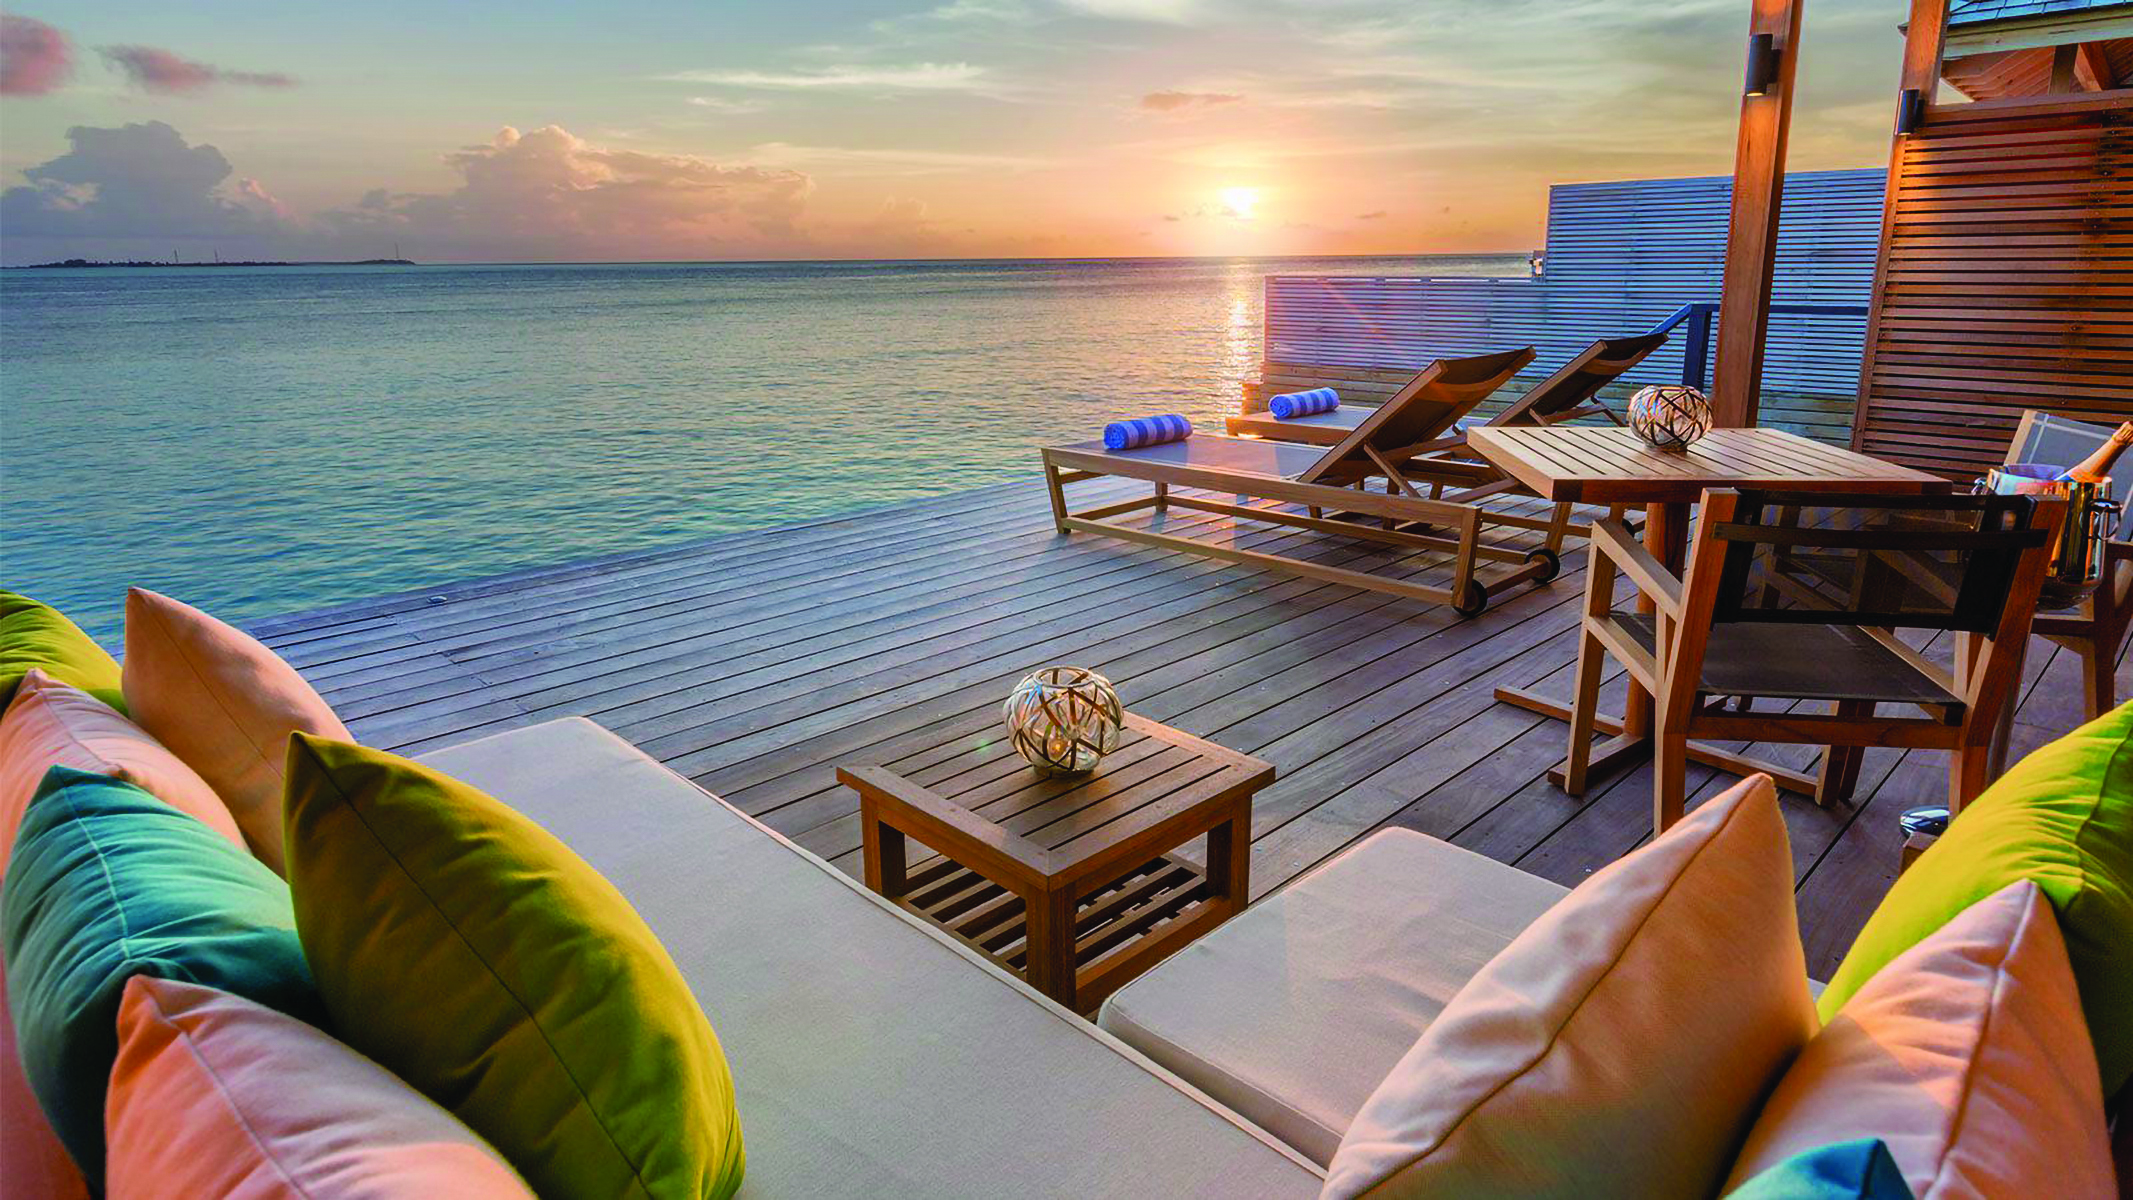 Отдых с видом на море. Hurawalhi Мальдивы отель. Остров Хуравальи Мальдивы. Hurawalhi Maldives 5* Resort 5. Hurawalhi Resort Maldives 5 тур.